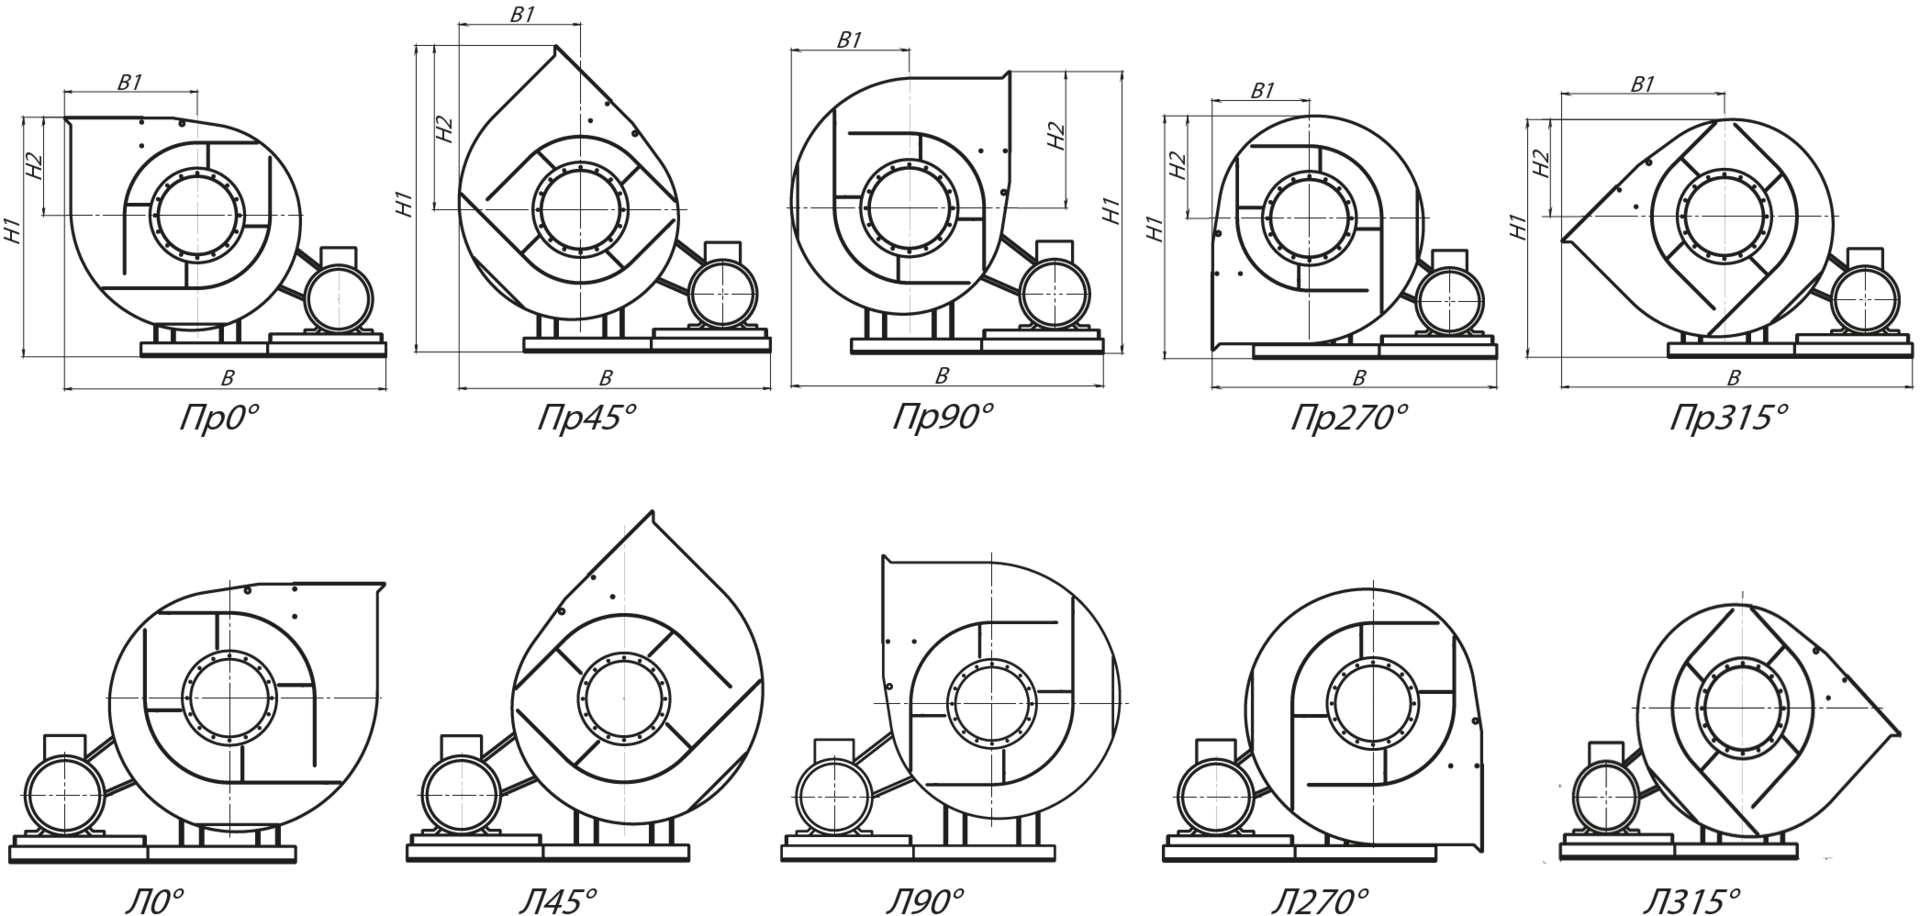 Стандартные варианты углов поворота корпуса вентиляторов ВР 86-77-16 схема 5